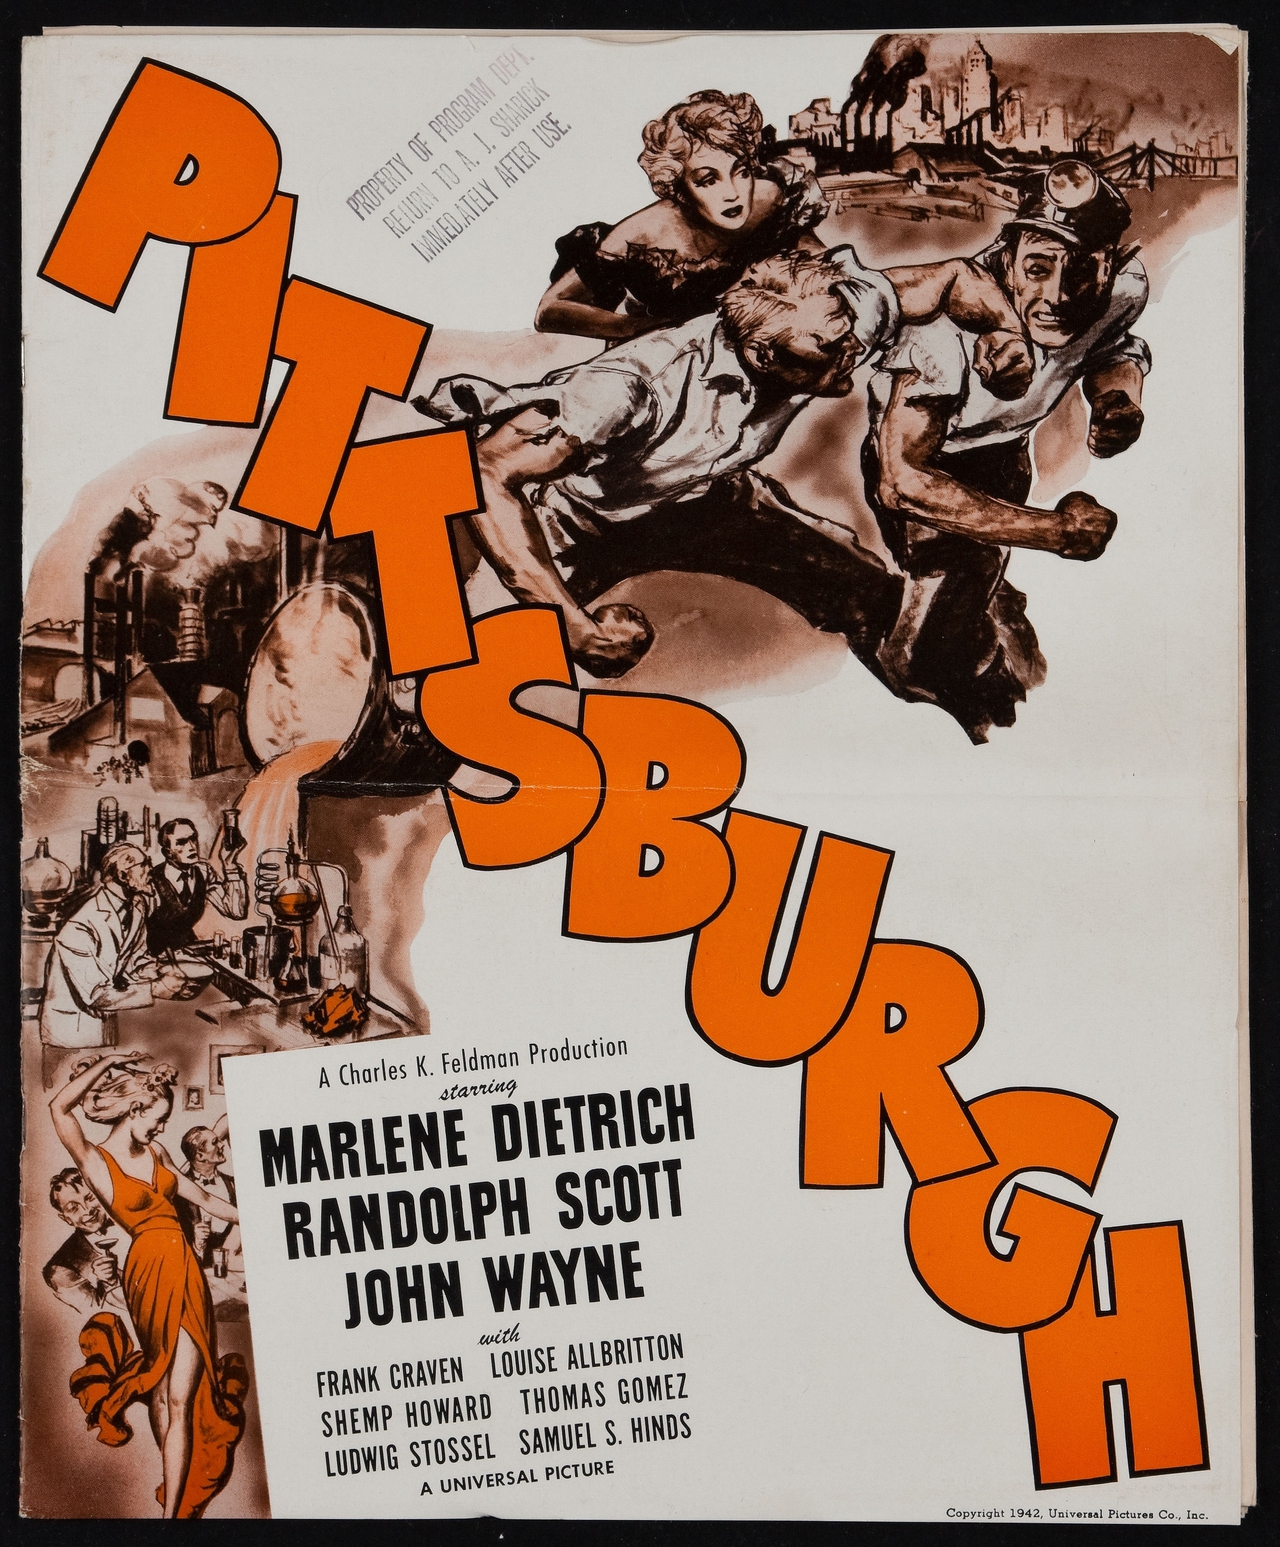 مارلنه دیتریش در صحنه فیلم سینمایی Pittsburgh به همراه John Wayne و Randolph Scott